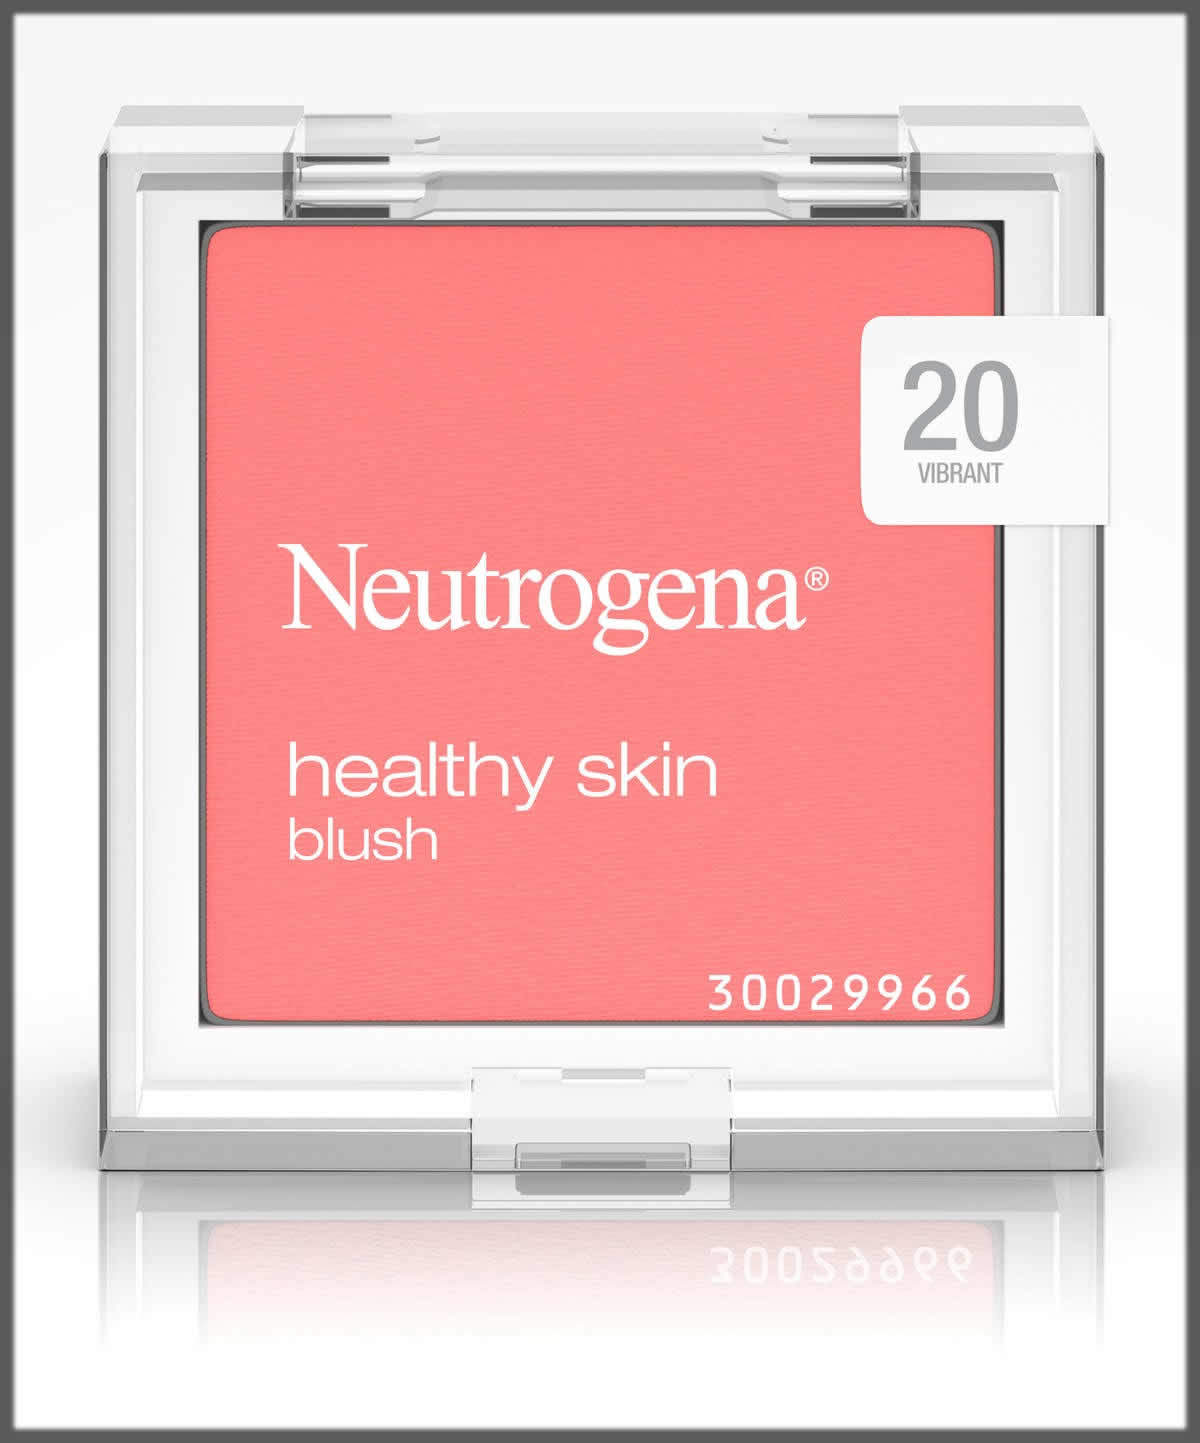 Neutrogena blush